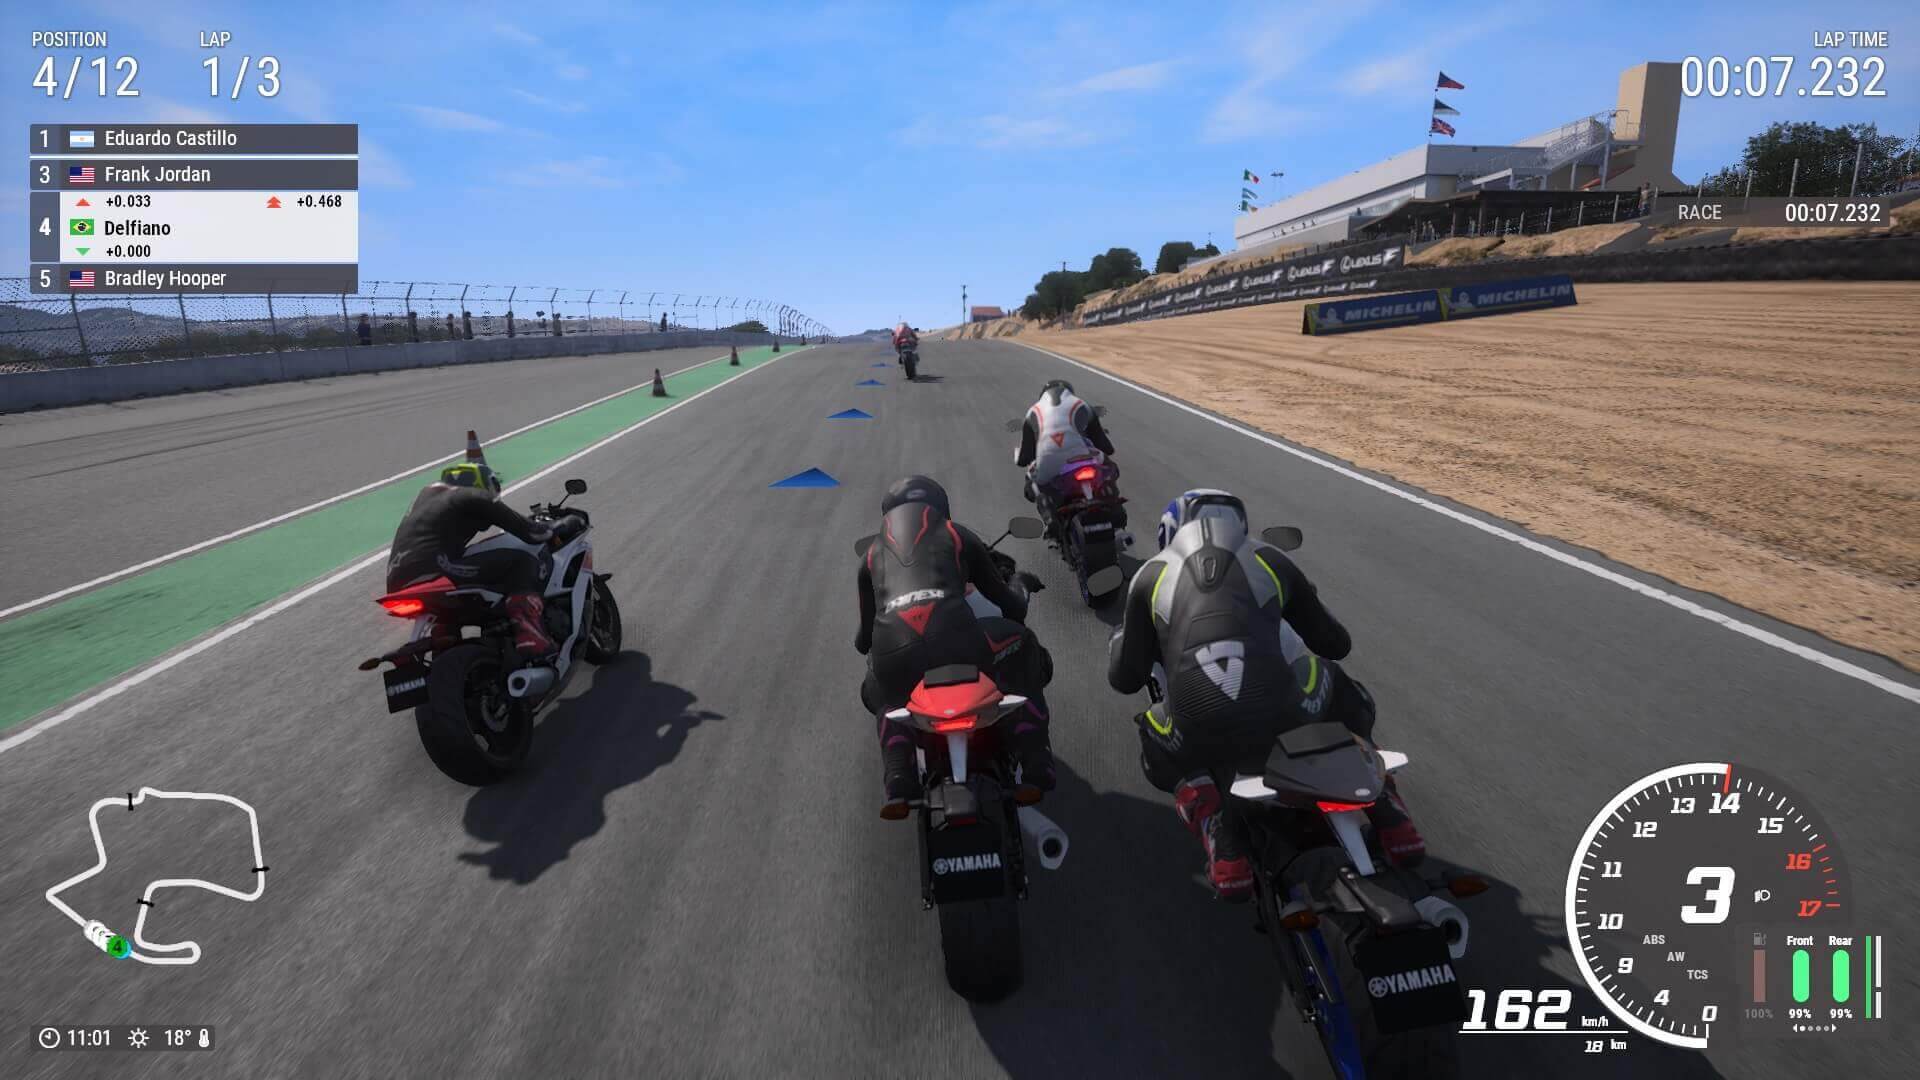 MOTO ACELERANDO no Jogo moto ride ps4 PlayStation 4, xbox 360